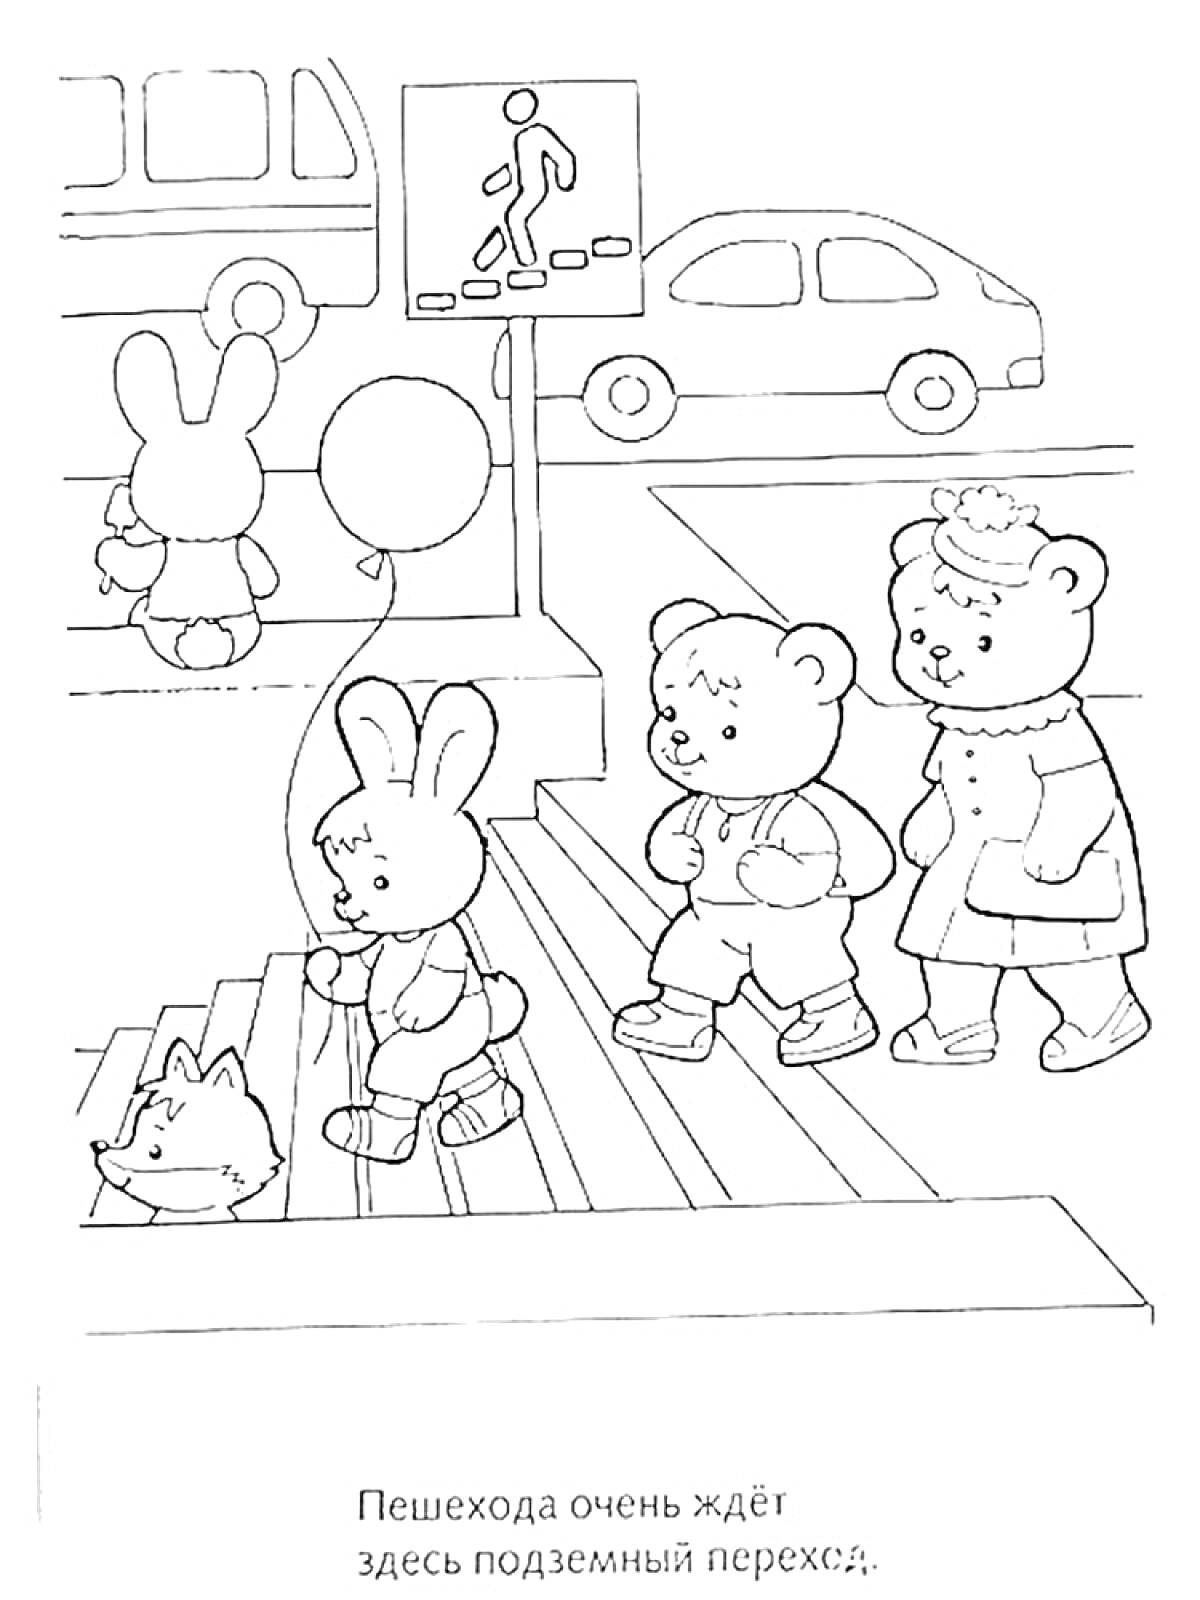 Раскраска Подземный переход с пешеходами и автомобилями (зайчик, два медвежонка, собачка, два автомобиля, указатель подземного перехода)